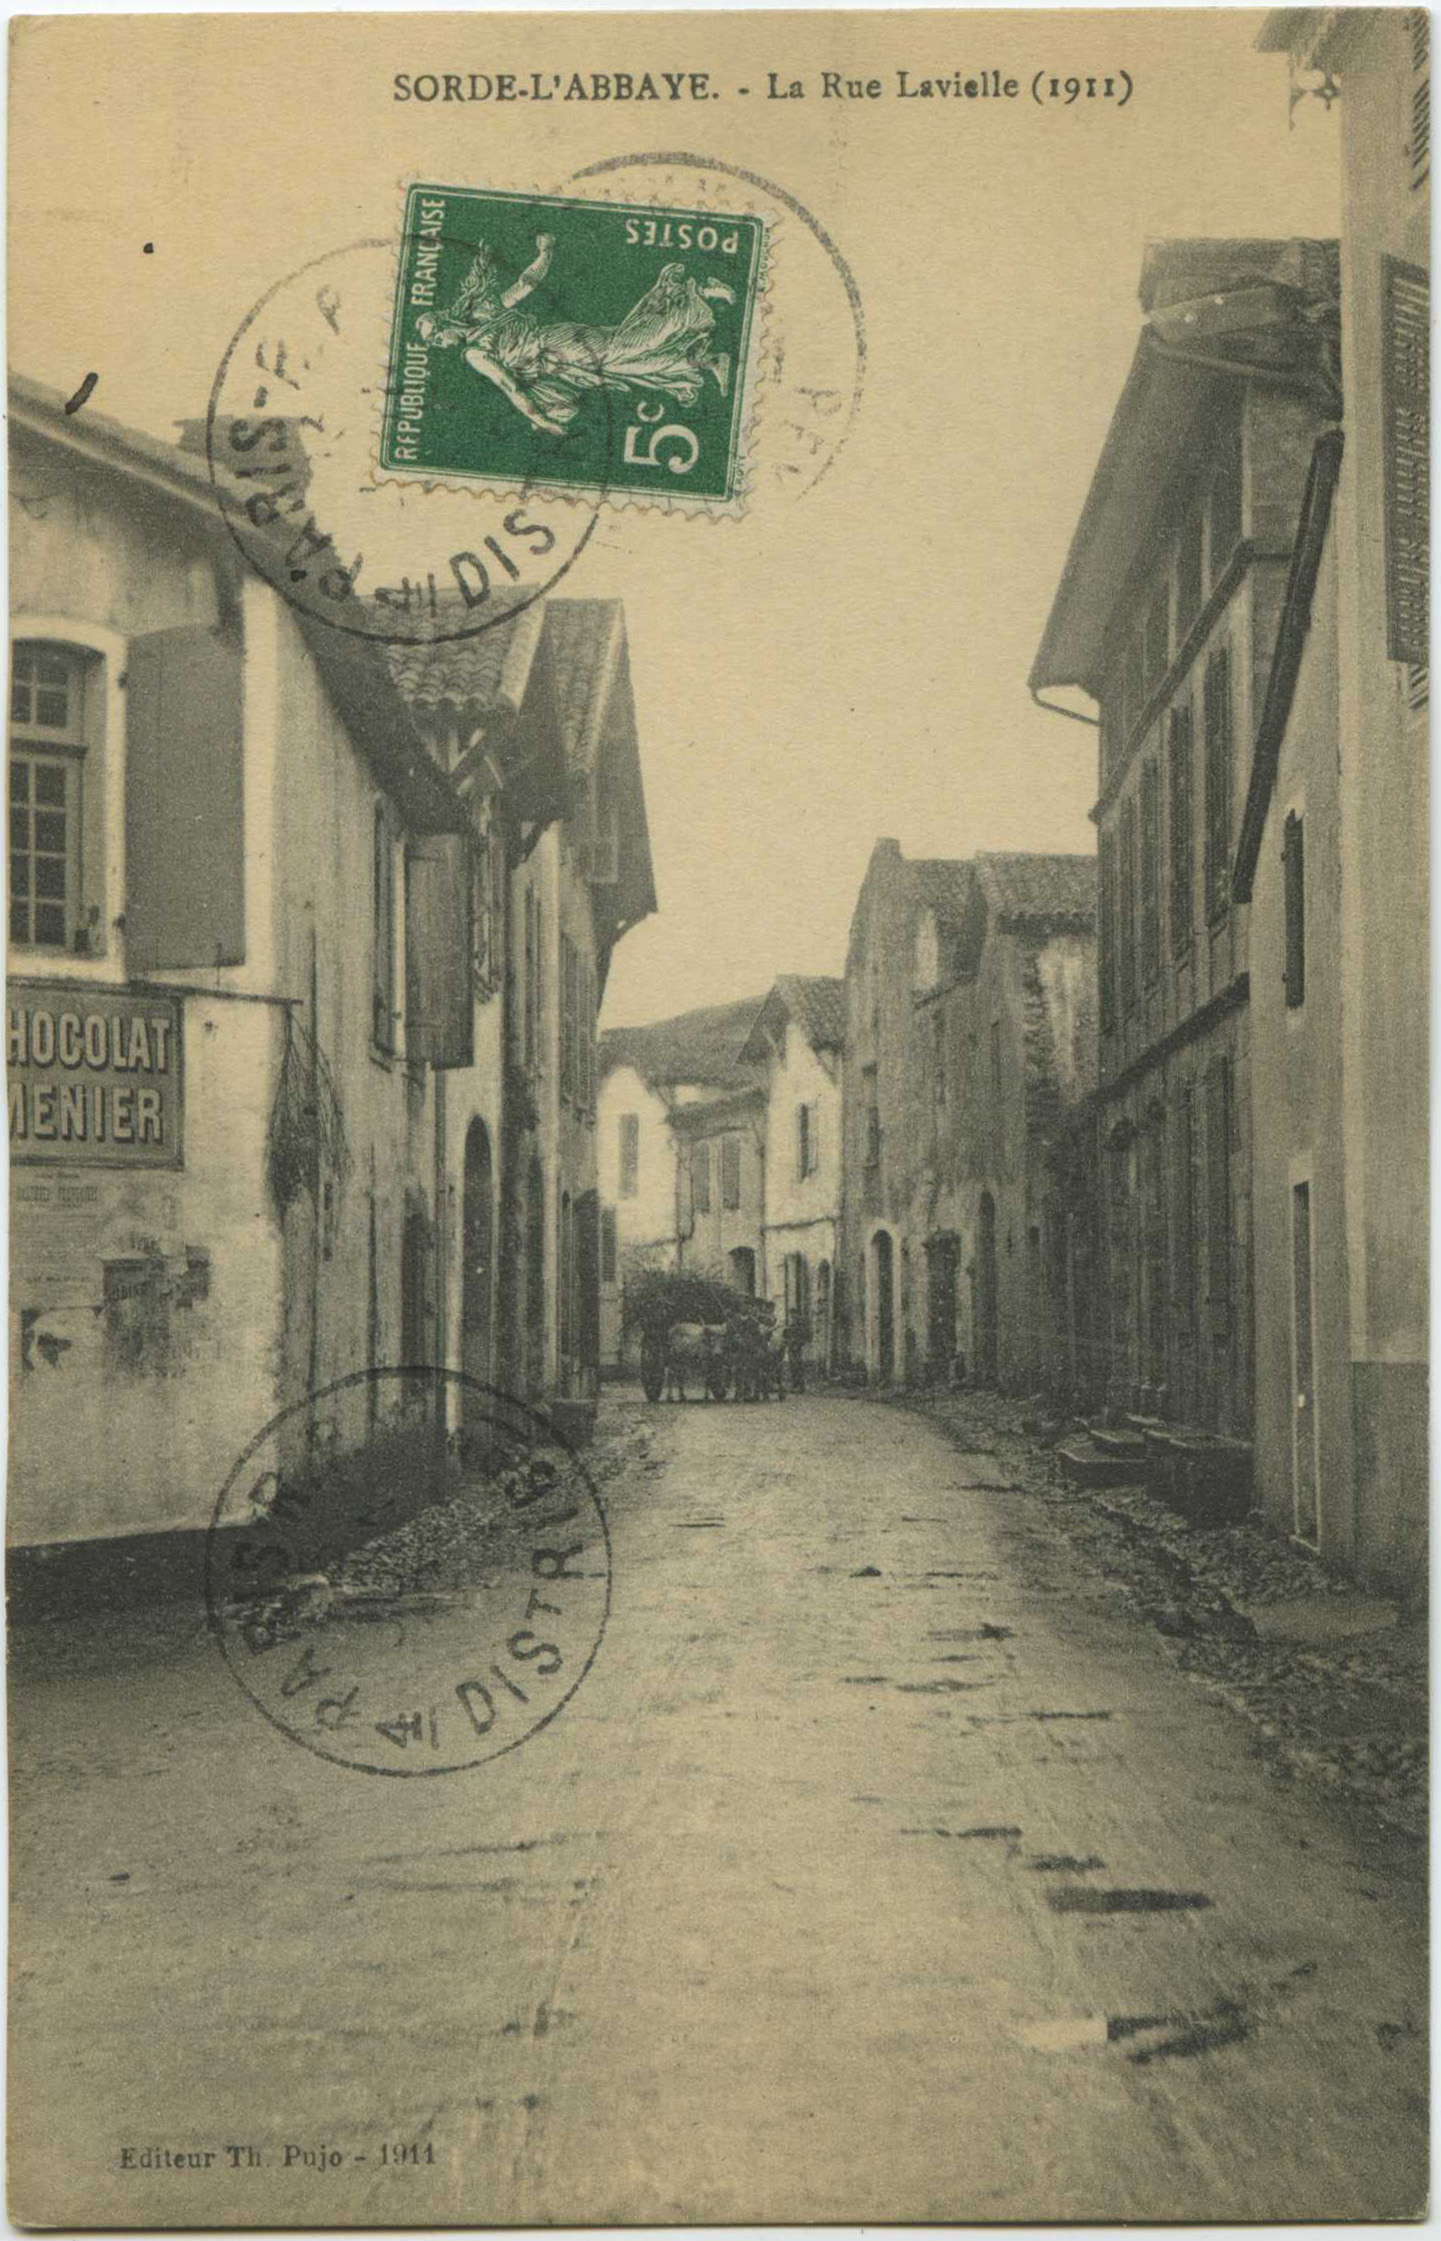 Sorde-l'Abbaye - La Rue Lavielle (1911)